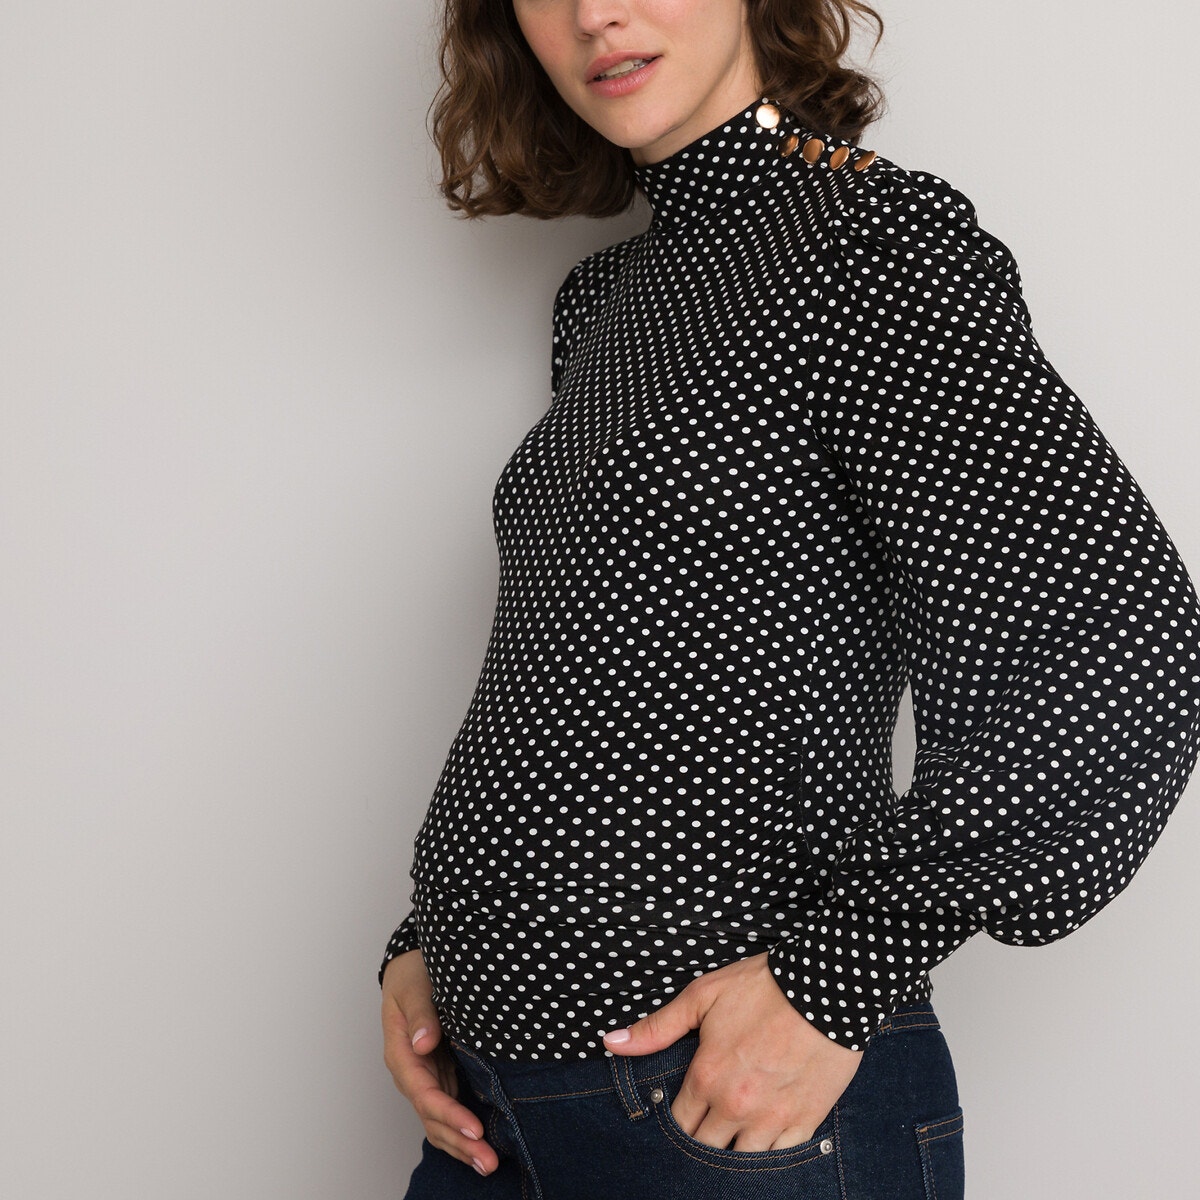 Μακρυμάνικη μπλούζα εγκυμοσύνης με όρθιο λαιμό